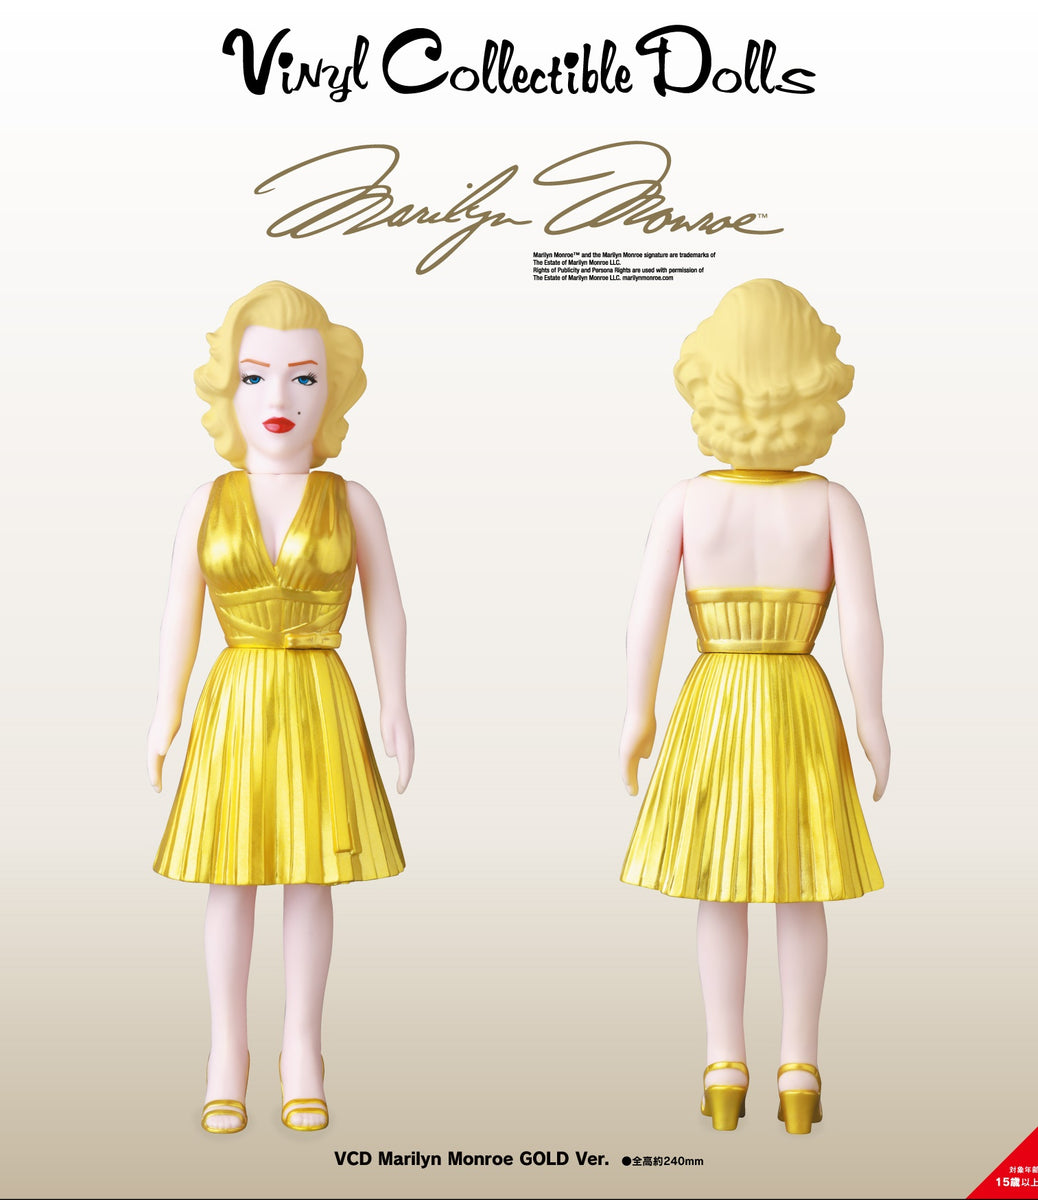 メディコム Medicom VCD Marilyn Monroe Gold Ver. Figure (gold)